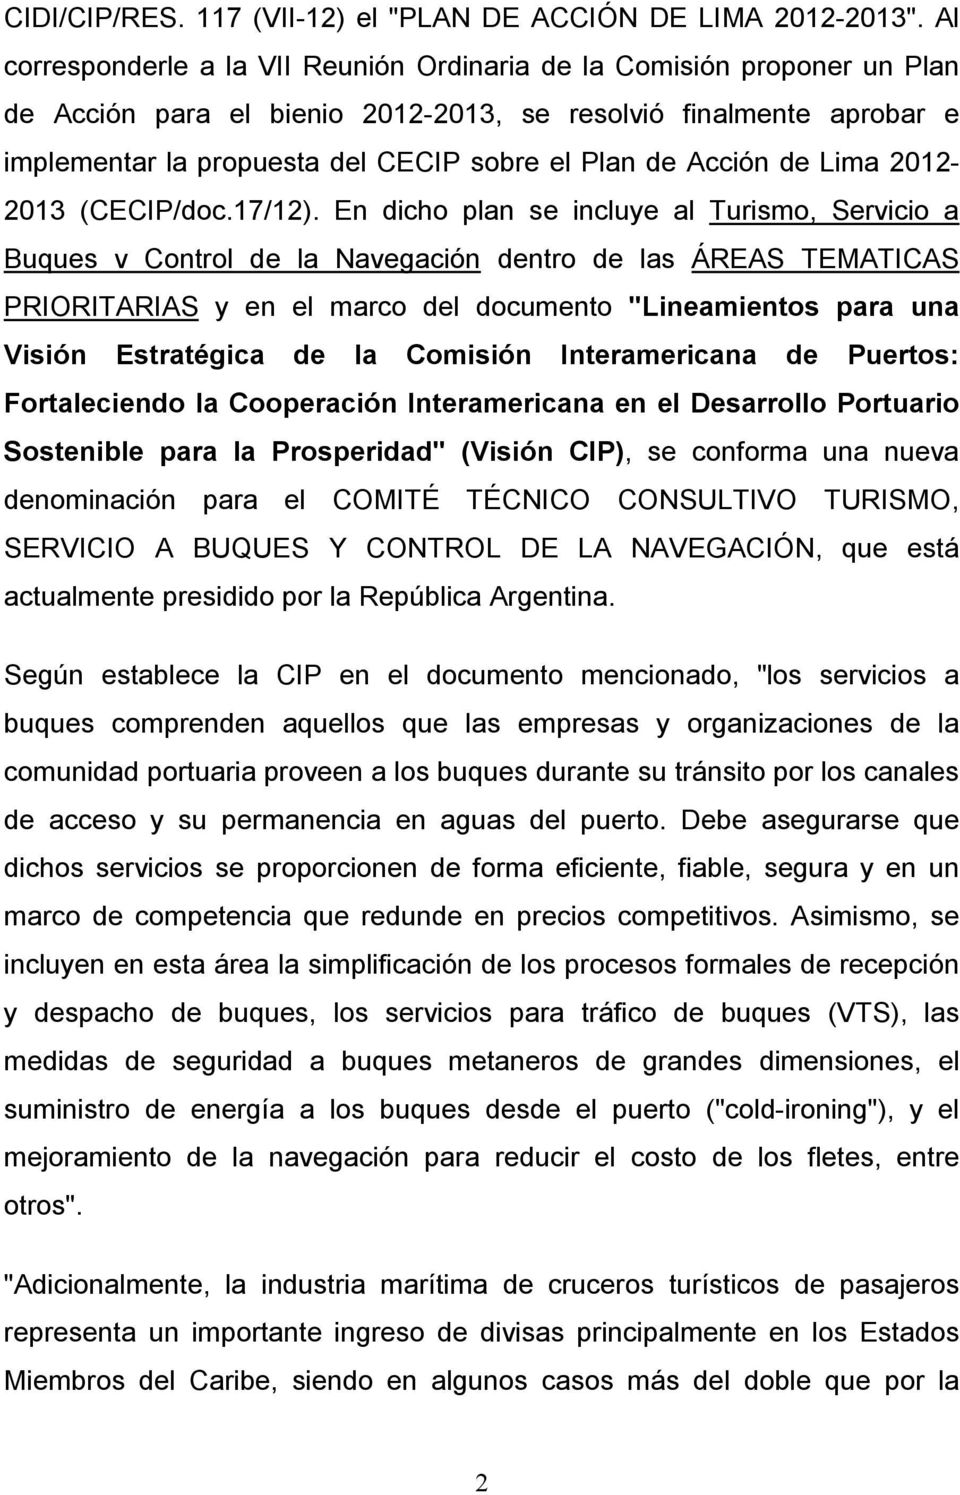 Acción de Lima 2012-2013 (CECIP/doc.17/12).